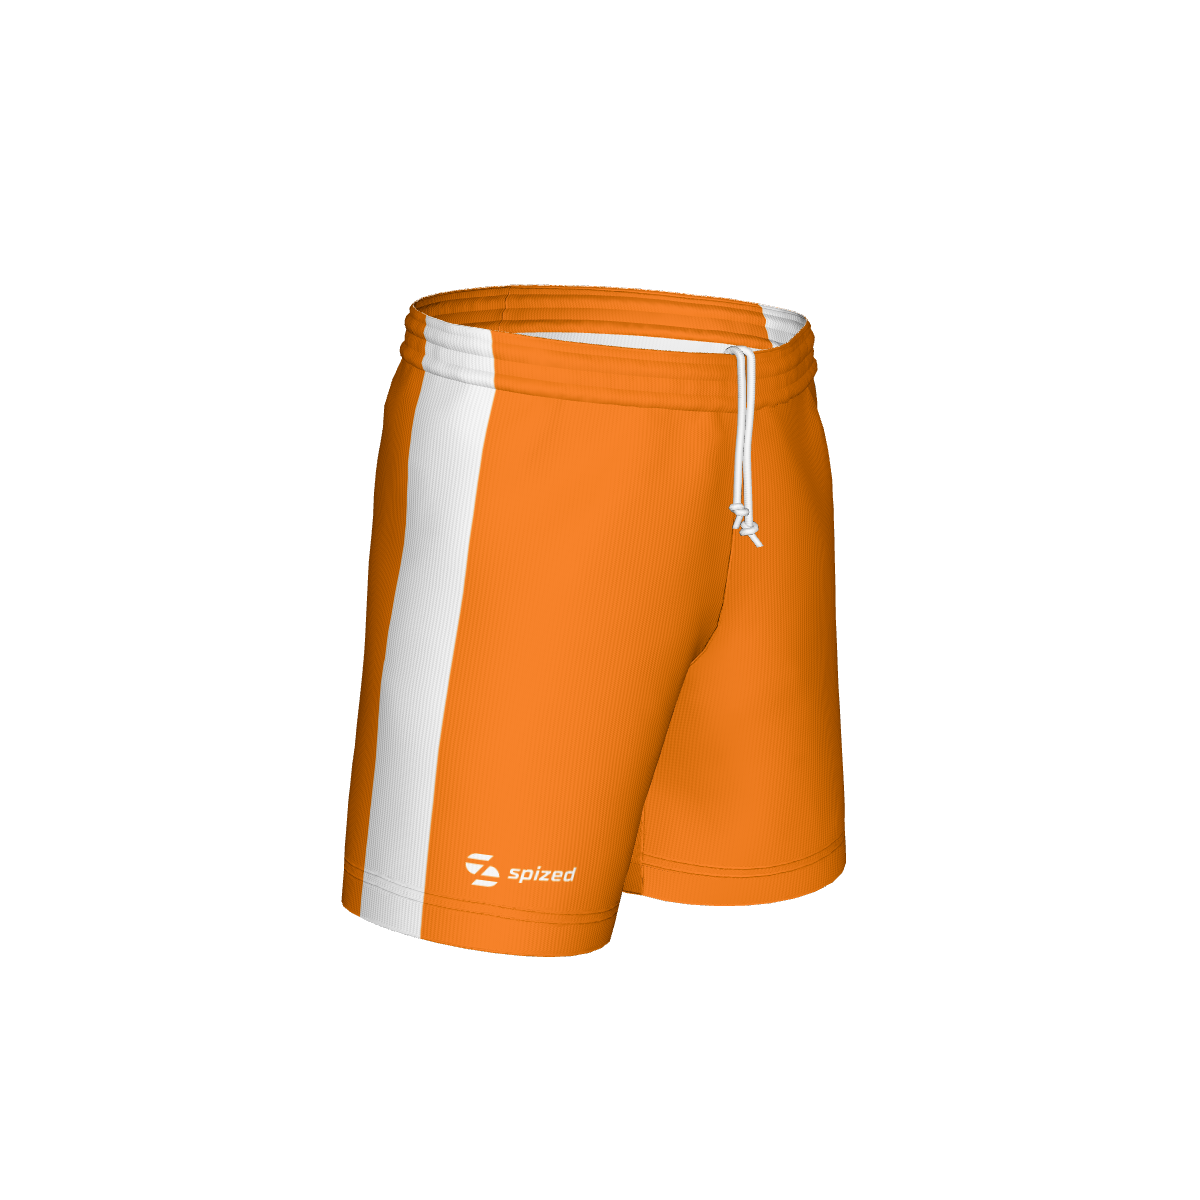 Paulo children’s football shorts